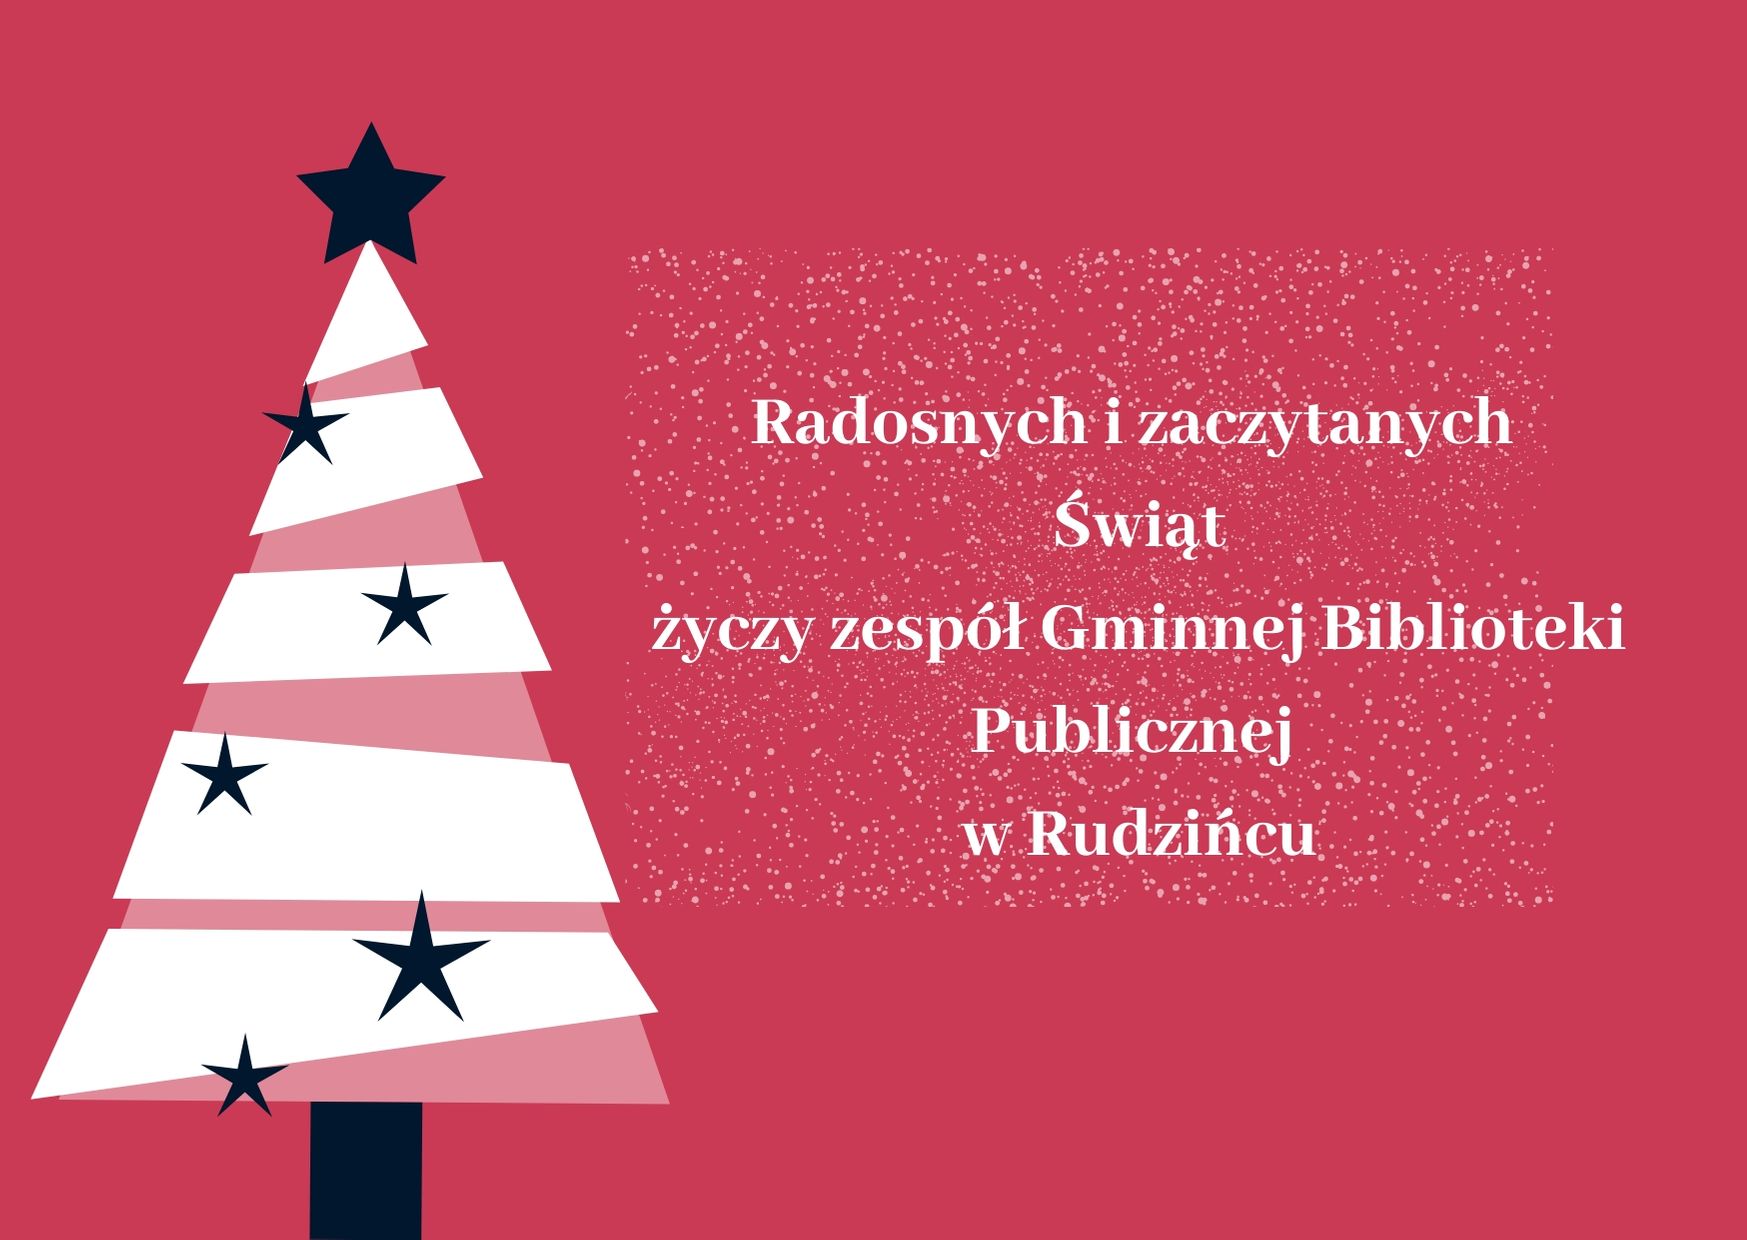 Radosnych i zaczytanych Świąt życzy zespół Gminnej Biblioteki Publicznej w Rudzińcu